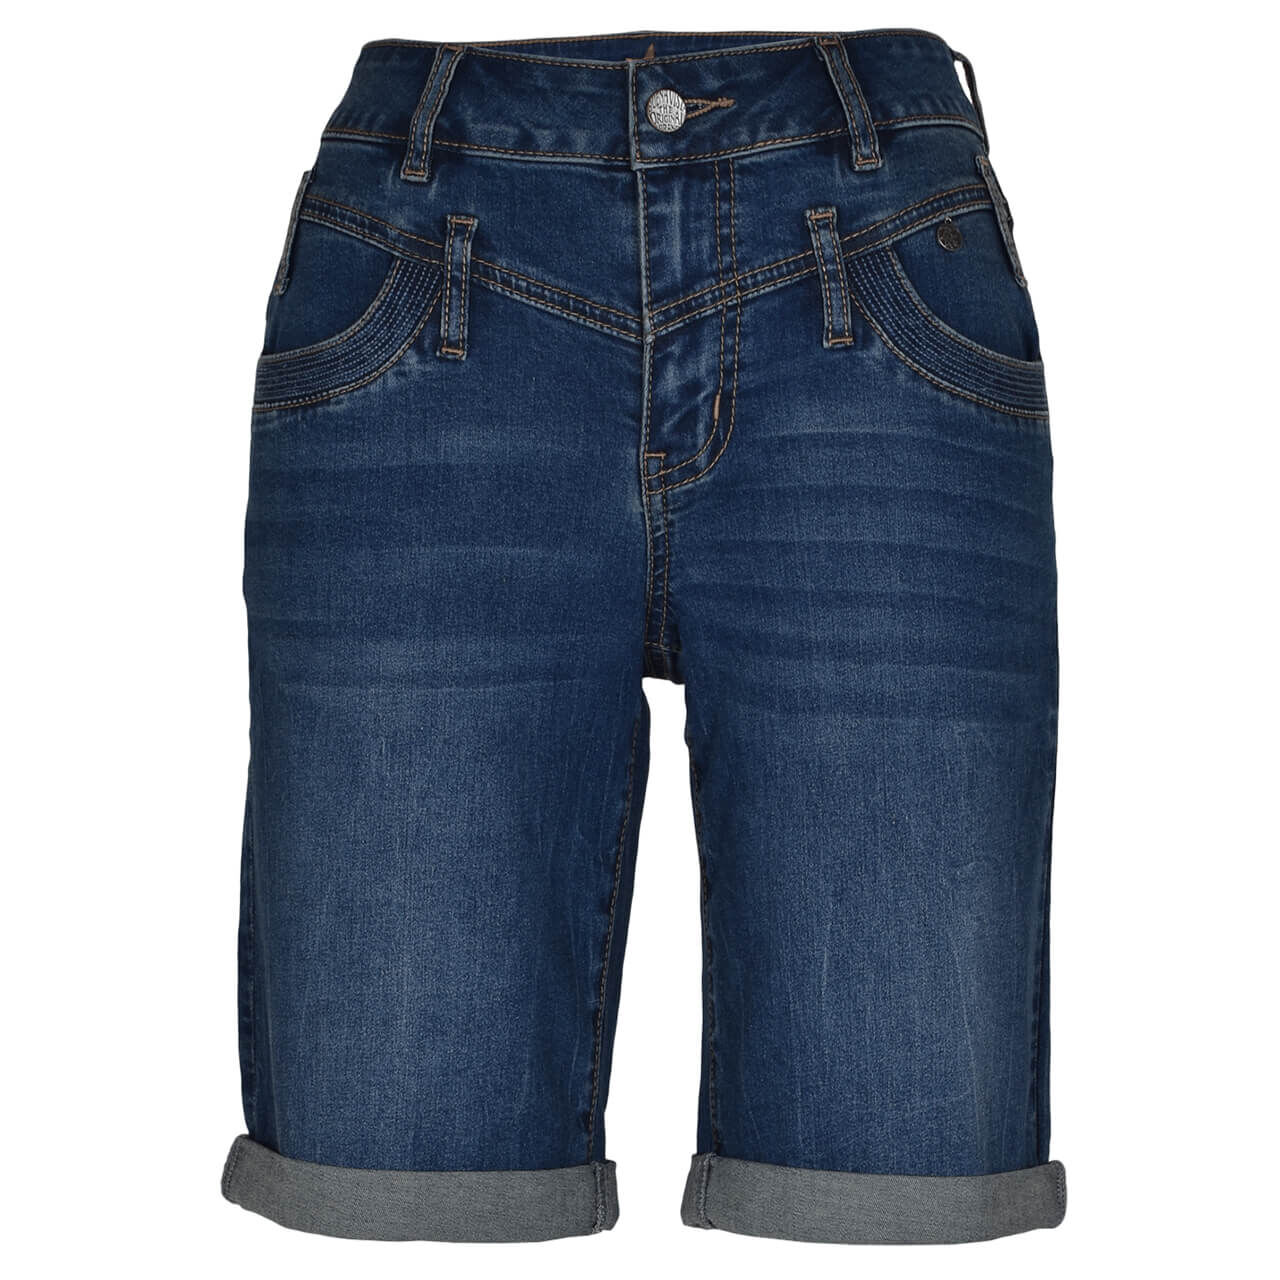 Buena Vista Jeans Florida-Short Stretch Denim für Damen in Mittelblau angewaschen, FarbNr.: 4543